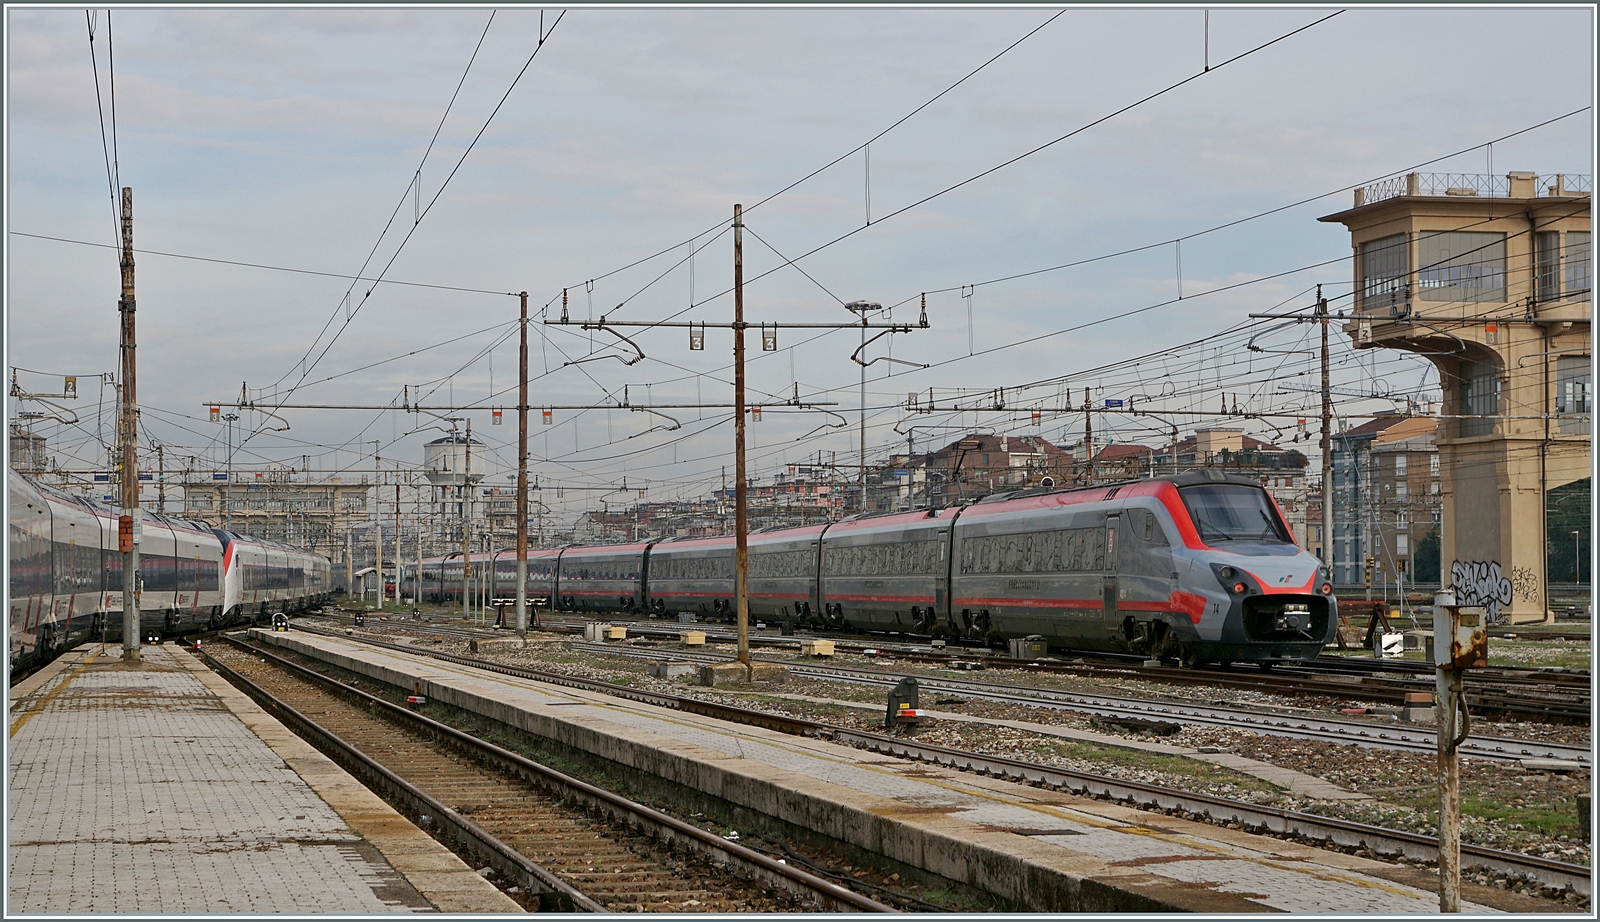 Der ETR 700 014 der noch in der  Frecciargento  Lackierung unterwegs ist, verlässt die Hallen der Bahnhofs von Milano Centrale und fährt in die Abstellanlage. 

8. November 2022